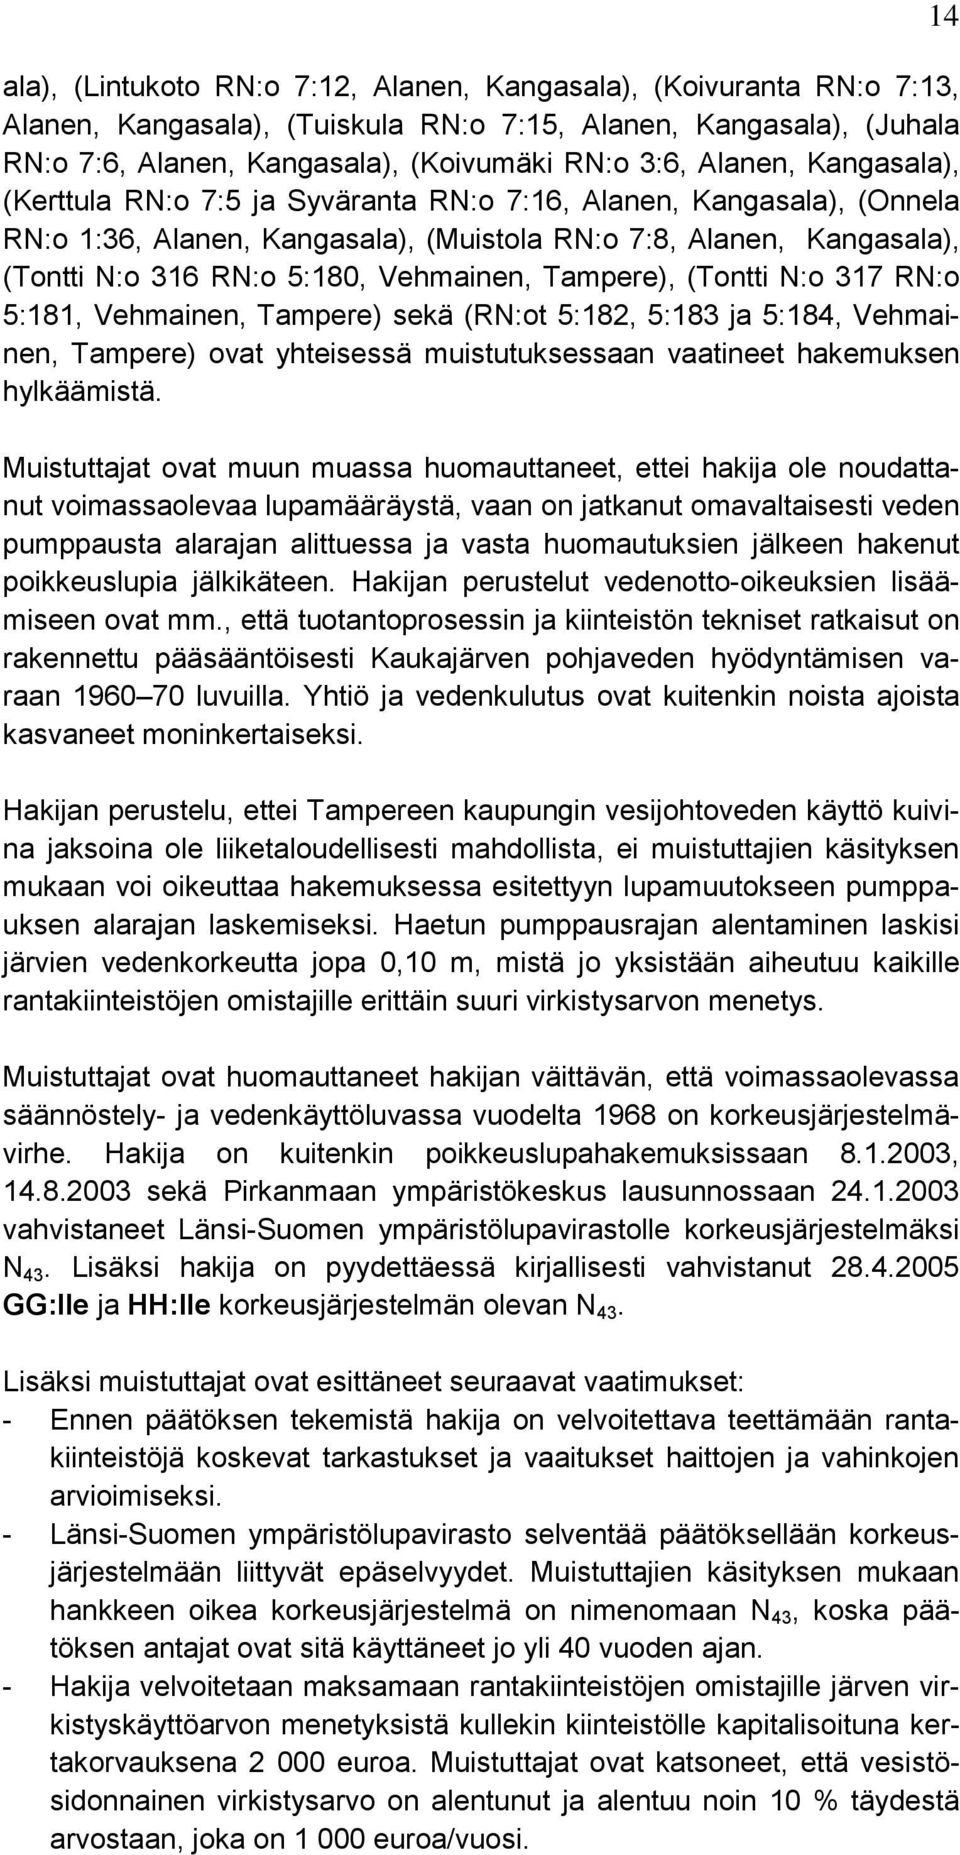 Tampere), (Tontti N:o 317 RN:o 5:181, Vehmainen, Tampere) sekä (RN:ot 5:182, 5:183 ja 5:184, Vehmainen, Tampere) ovat yhteisessä muistutuksessaan vaatineet hakemuksen hylkäämistä.